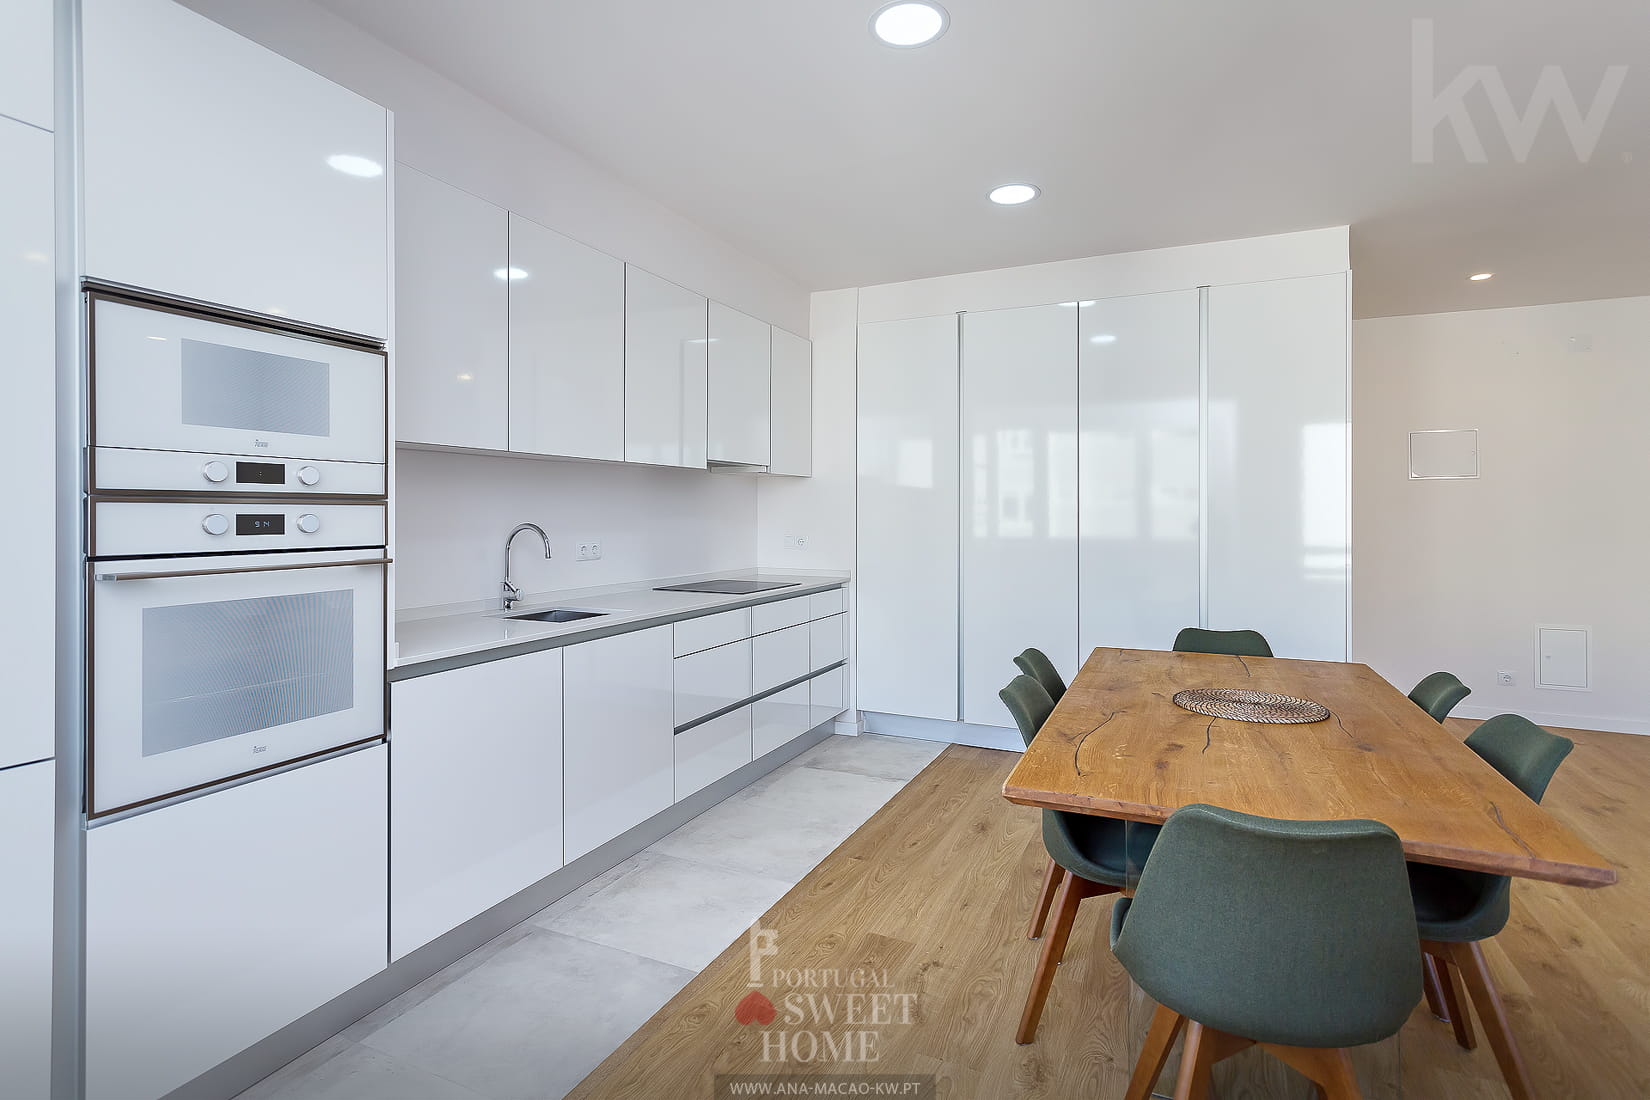 Cozinha (19 m²) totalmente equipada